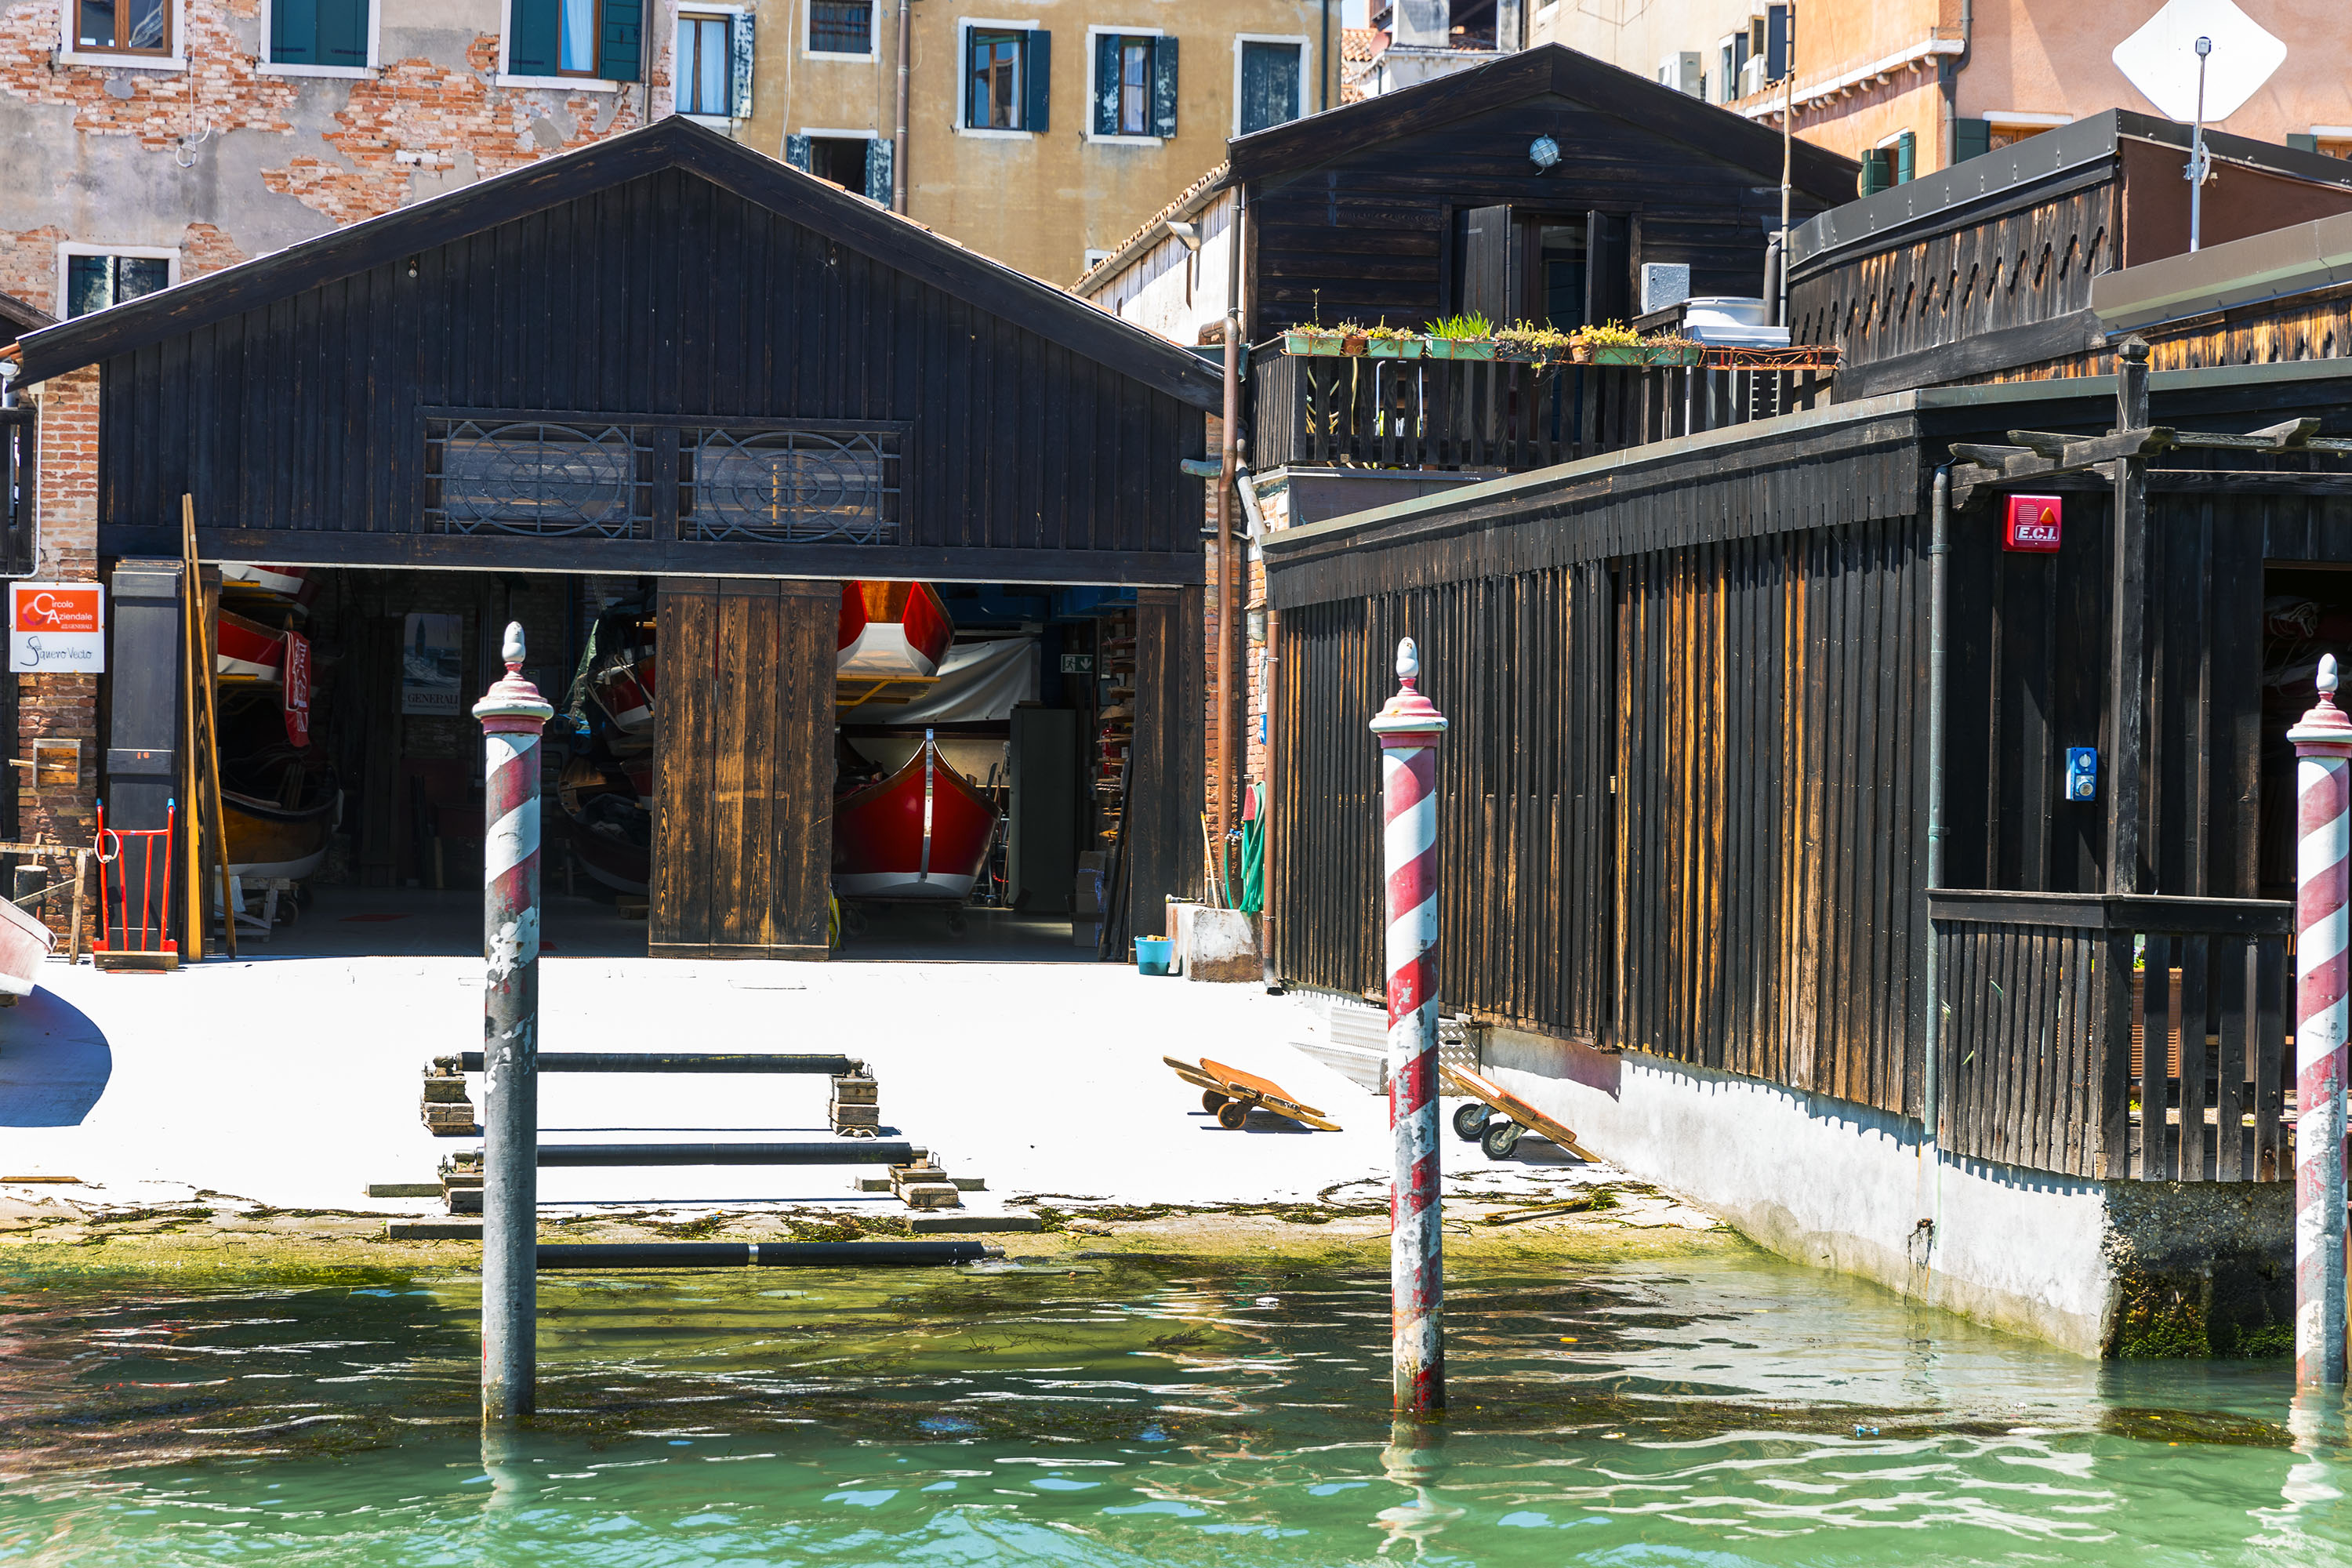 Venedig - Squero di San Trovaso, eine historische Schiffswerft mitten in Venedig